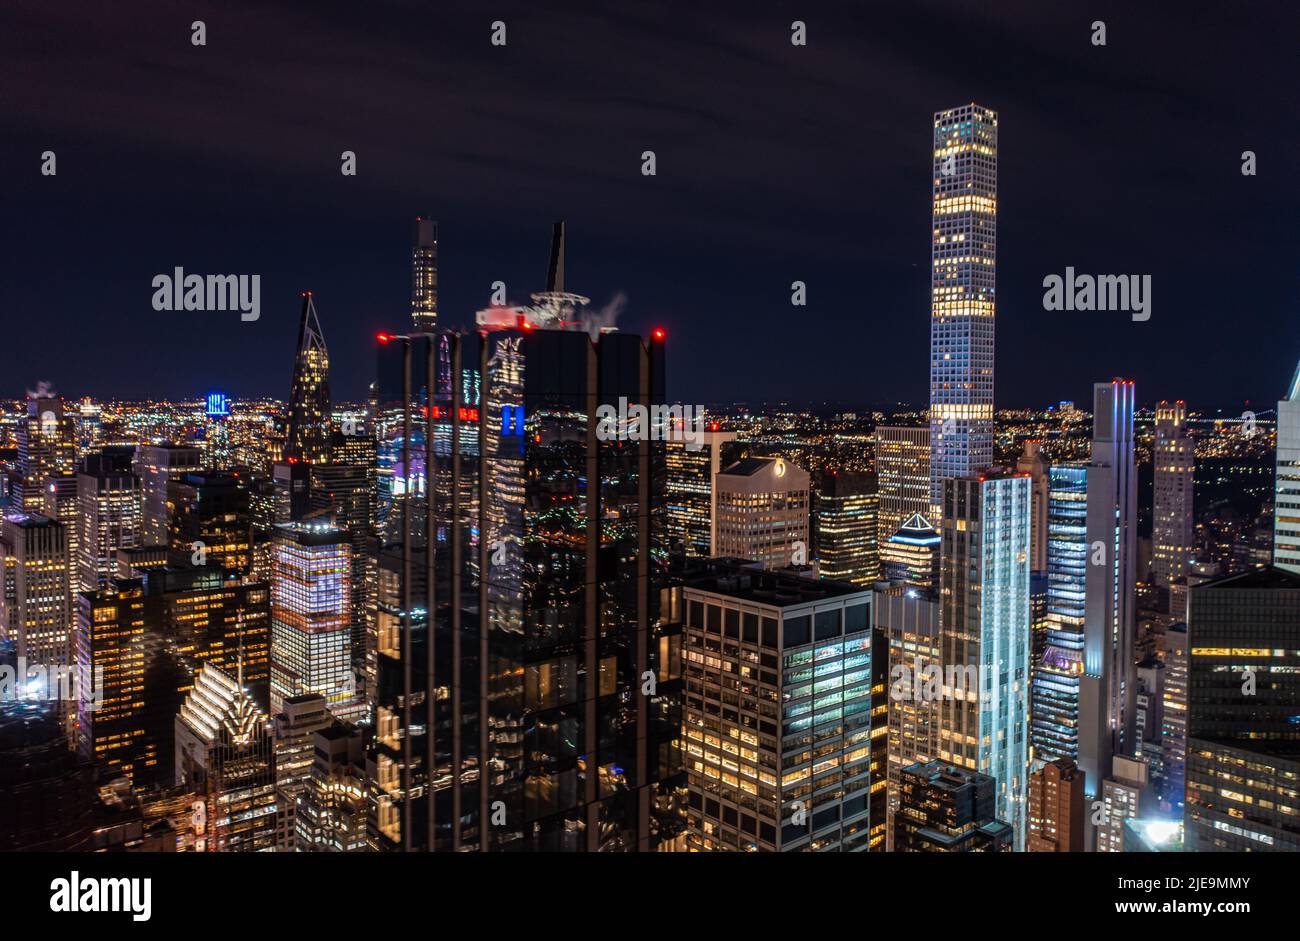 Nächtliche Stadtszene mit modernen Hochhäusern in der Metropole. Dunkle, glänzende Glasfassade, die die umliegenden Lichter reflektiert. Manhattan, New York City, USA Stockfoto